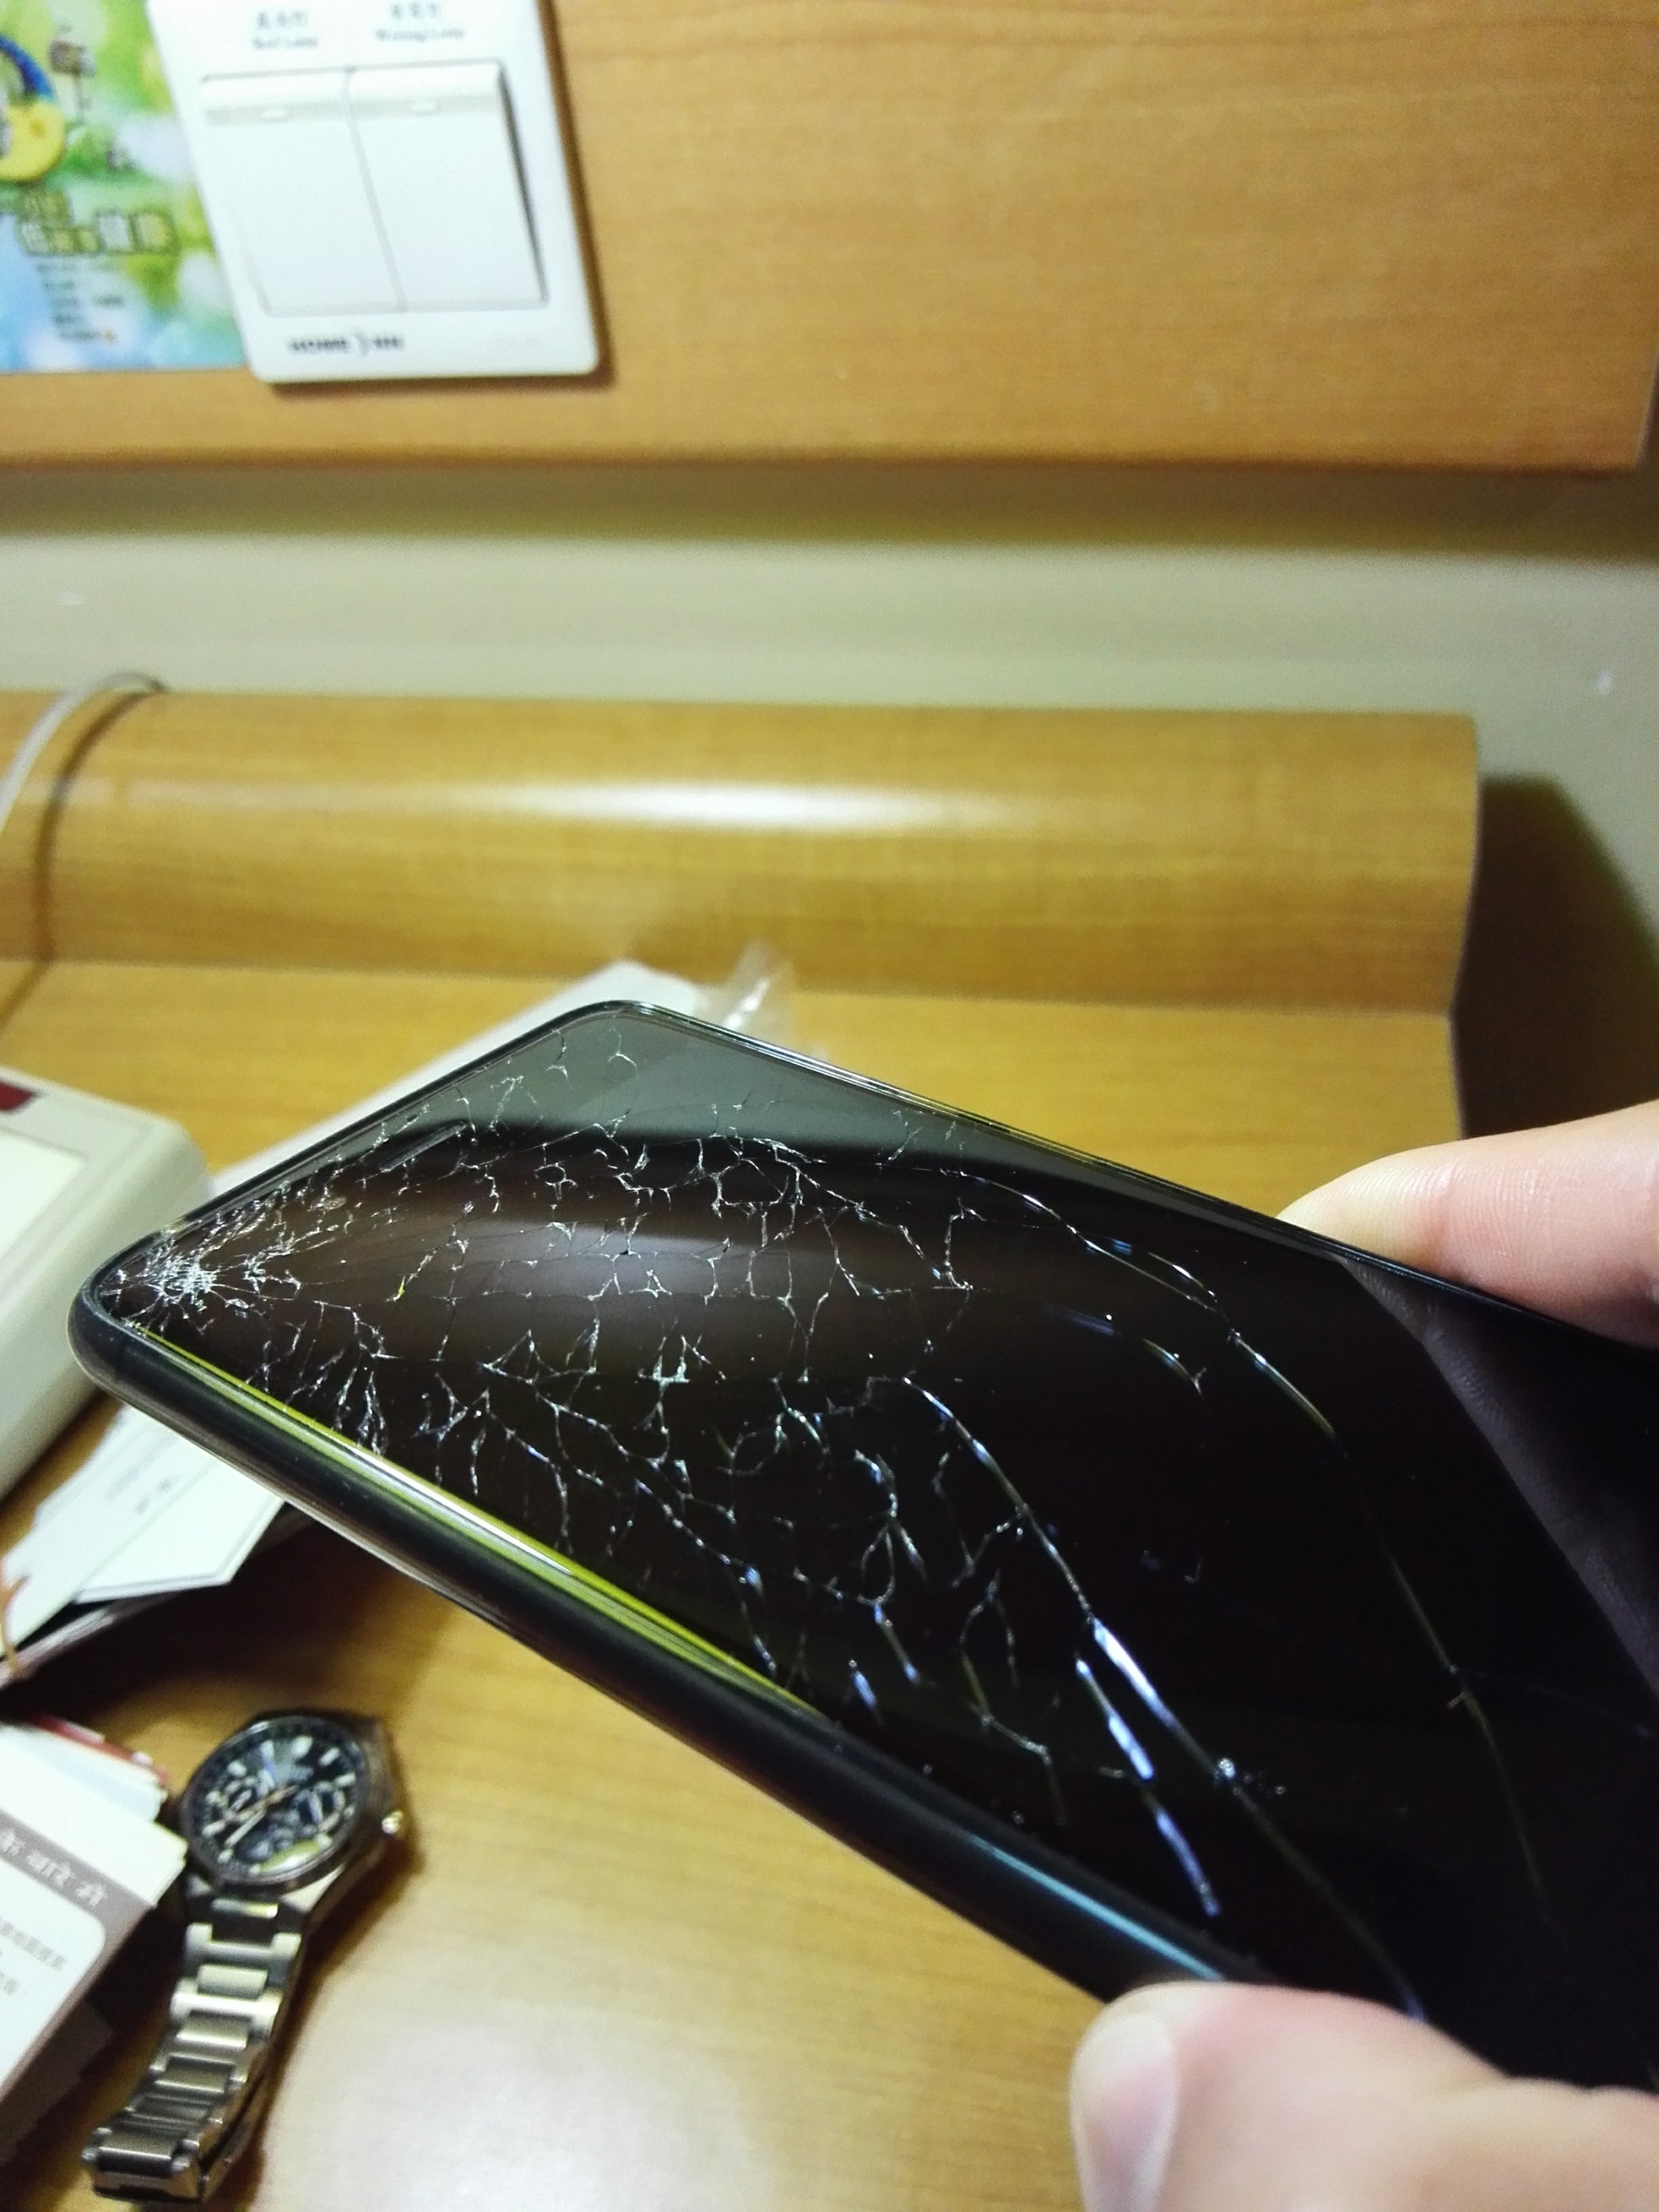 苹果12 Pro意外摔碎外屏还在保修期 换屏需… - Apple 社区